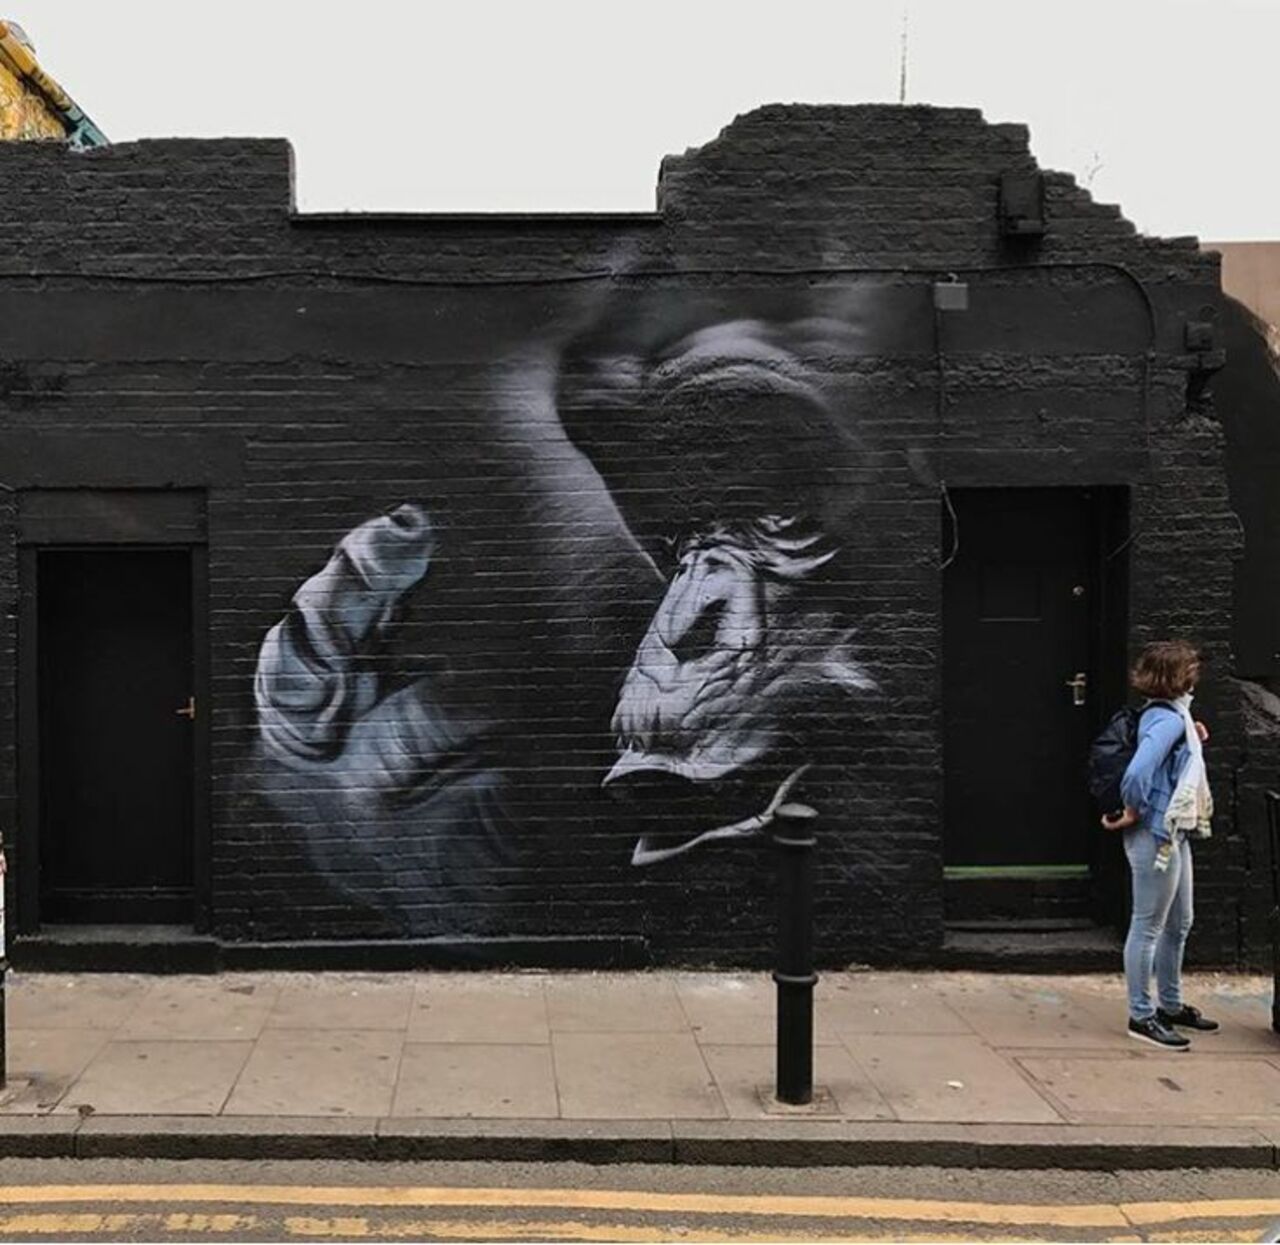 Impressive Street Art by Trafik #art #artist #artwork #streetart #muralart #graffiti #graffitiart #London #LoveTwitter https://t.co/hVmEGG2S1q